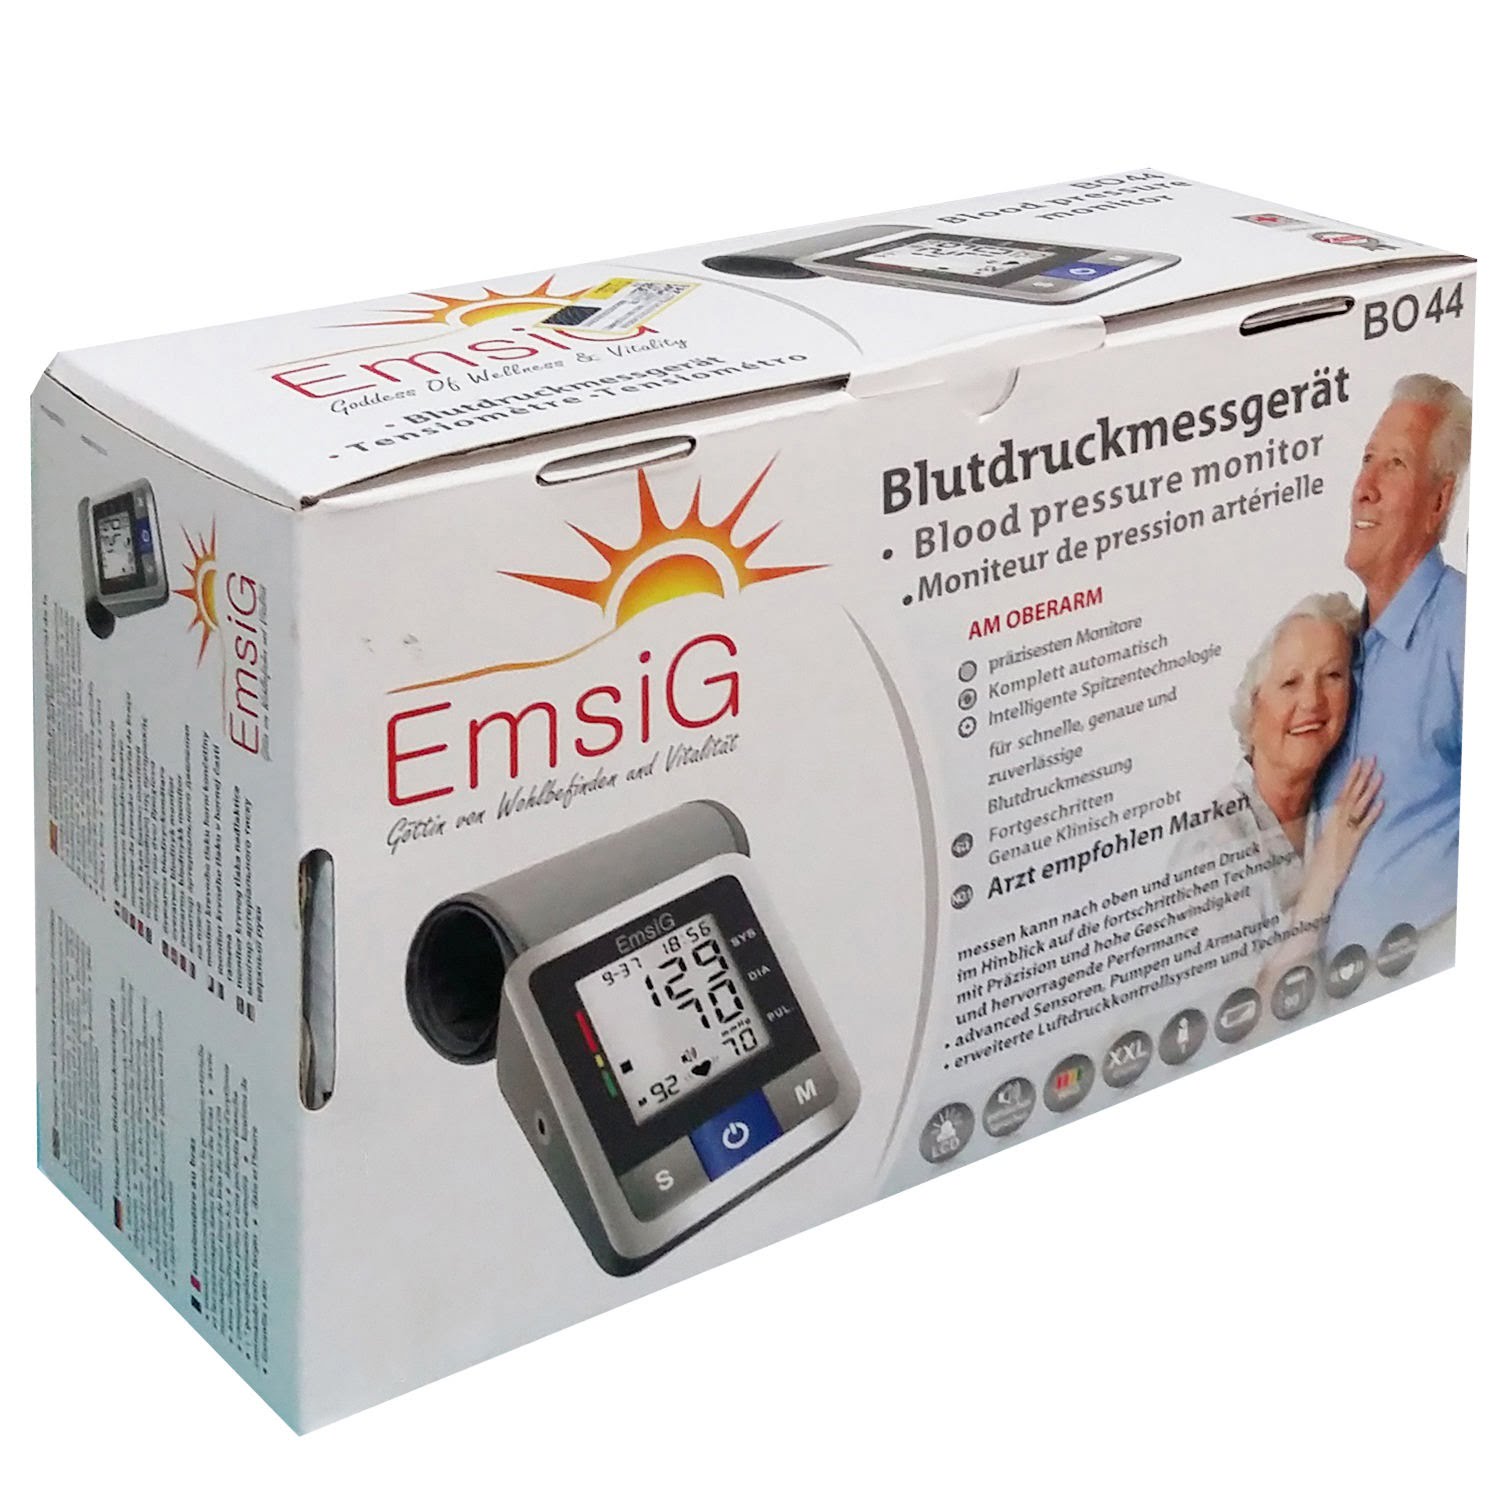 فشارسنج بازویی سریع BO44 امسیگ EmsiG BO44 Fast Arm Blood Pressure Monitor